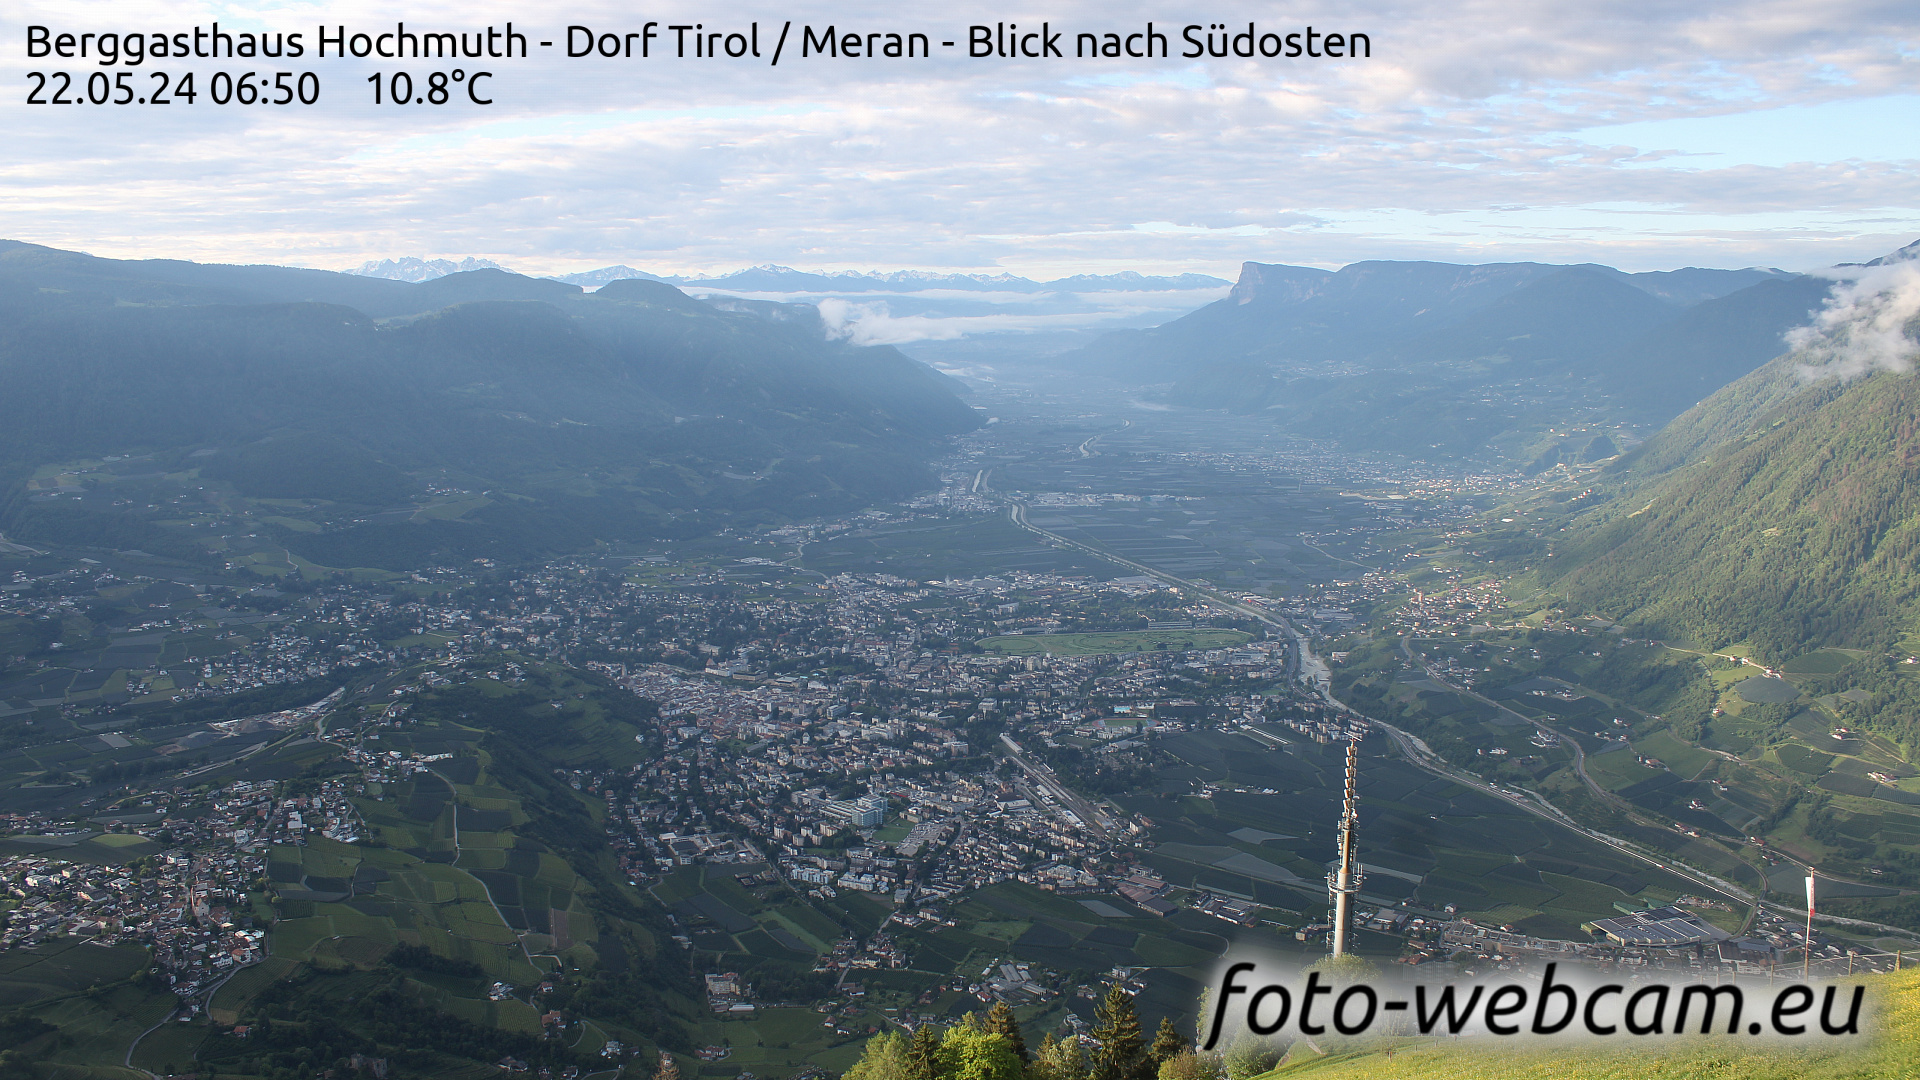 Dorf Tirol Di. 06:56